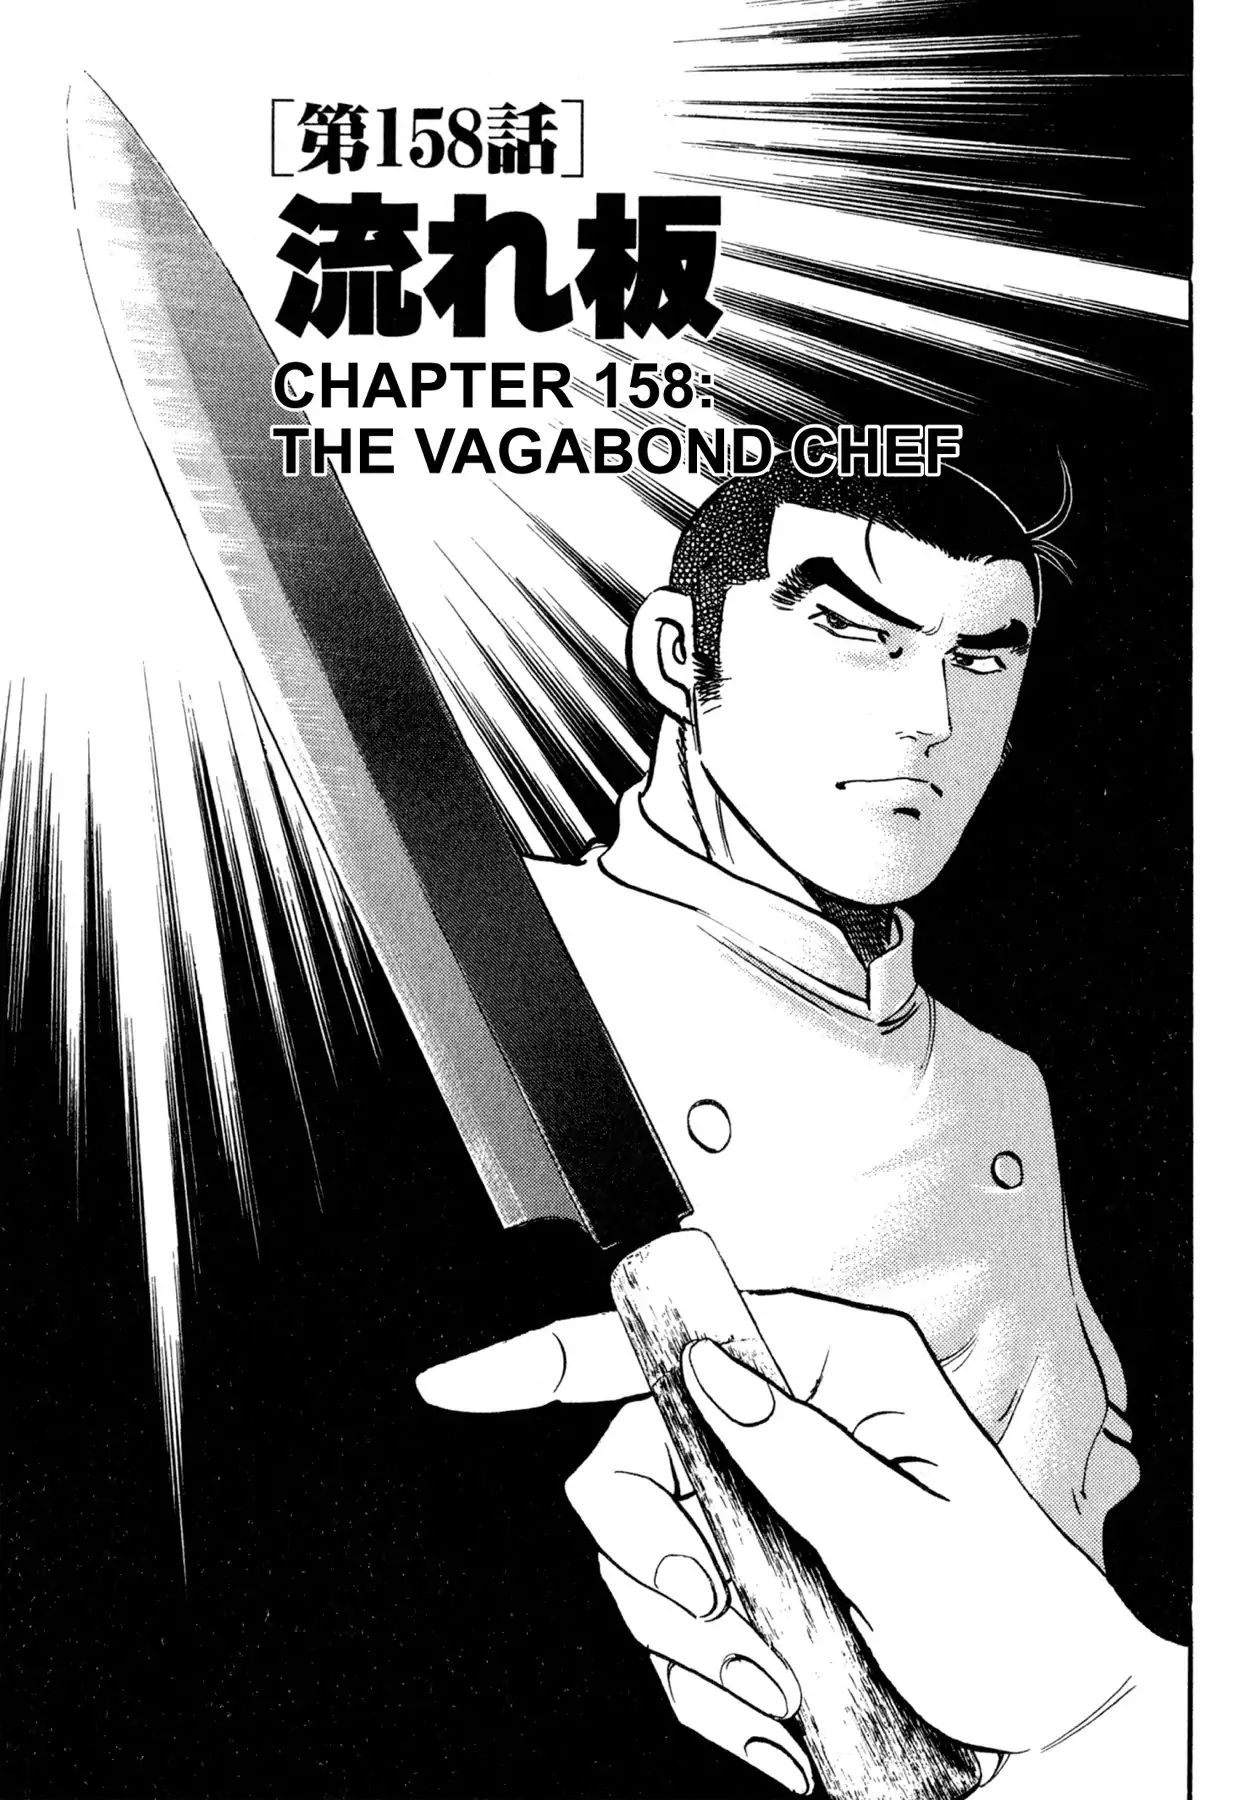 Shoku King VOL.18 CHAPTER 158: THE VAGABOND CHEF